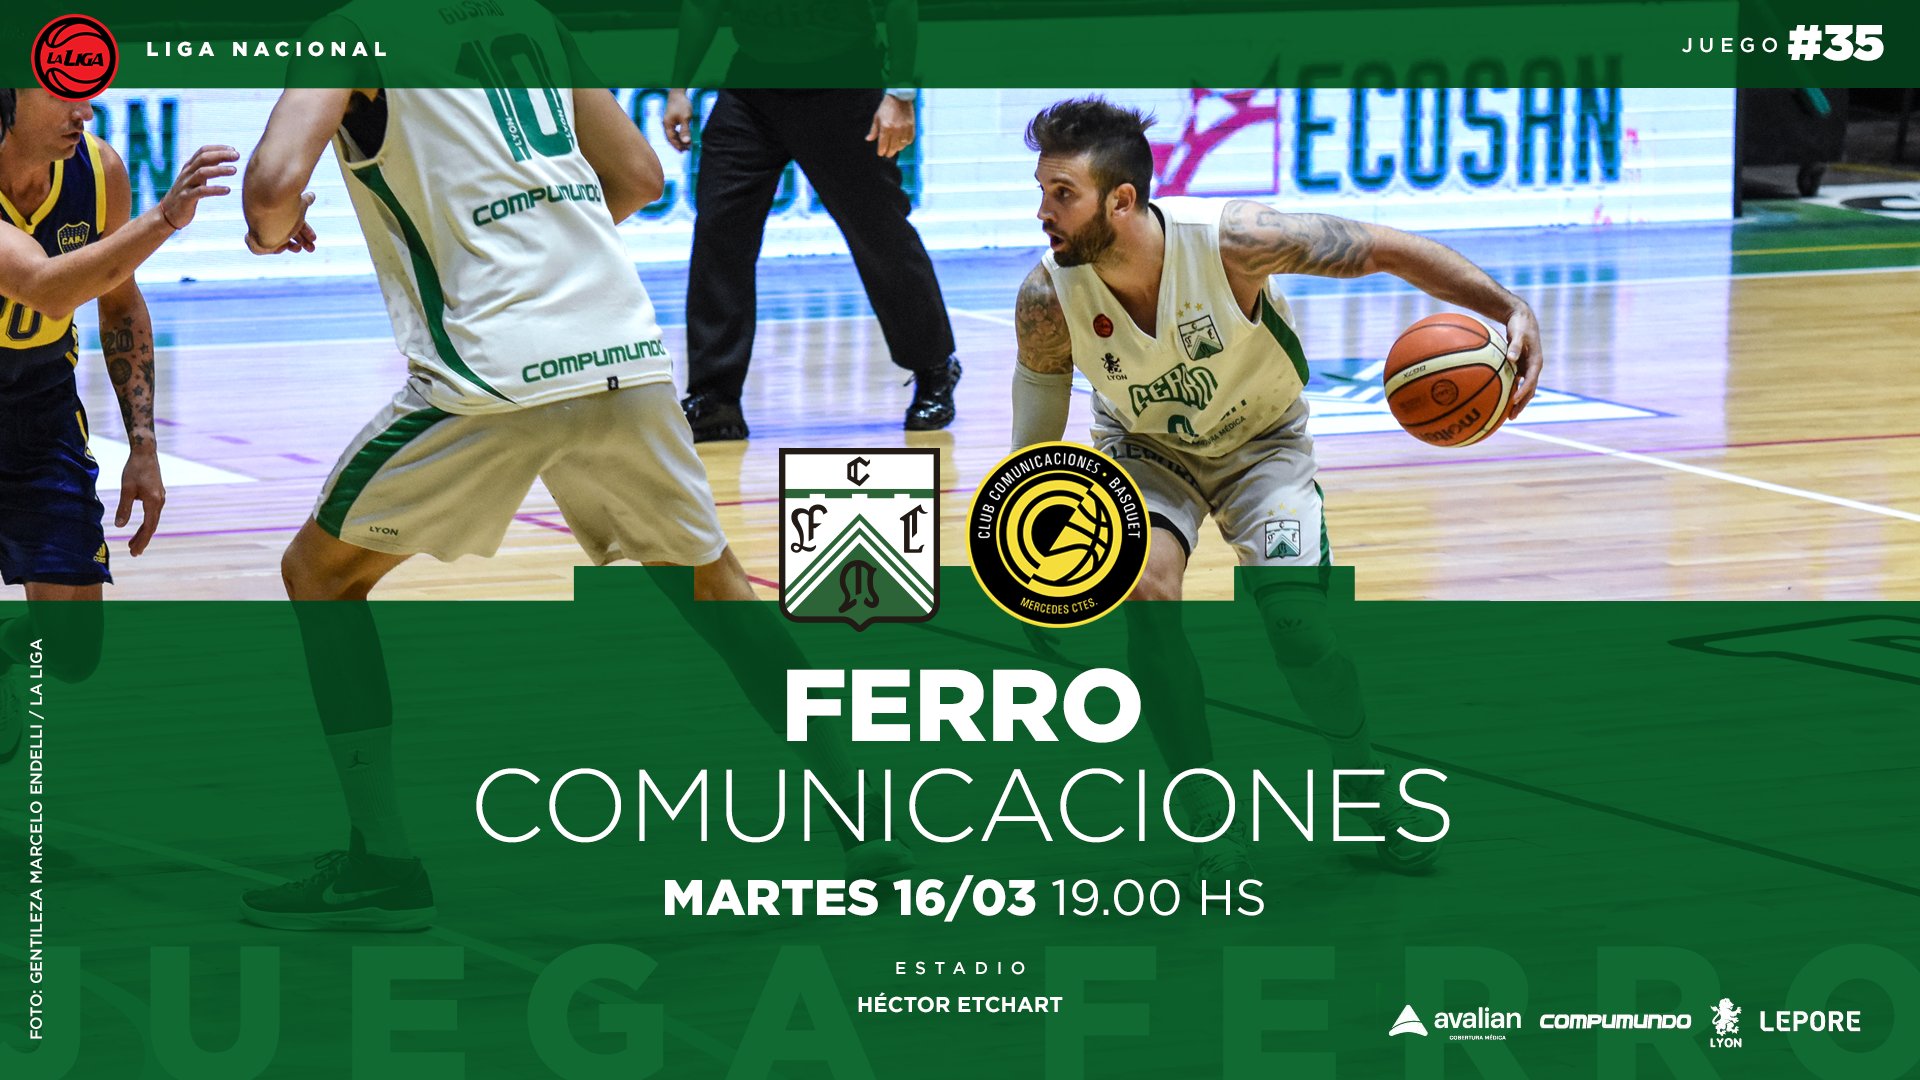 Hoy juega #Ferro! 🚂💚 - Club Ferro Carril Oeste